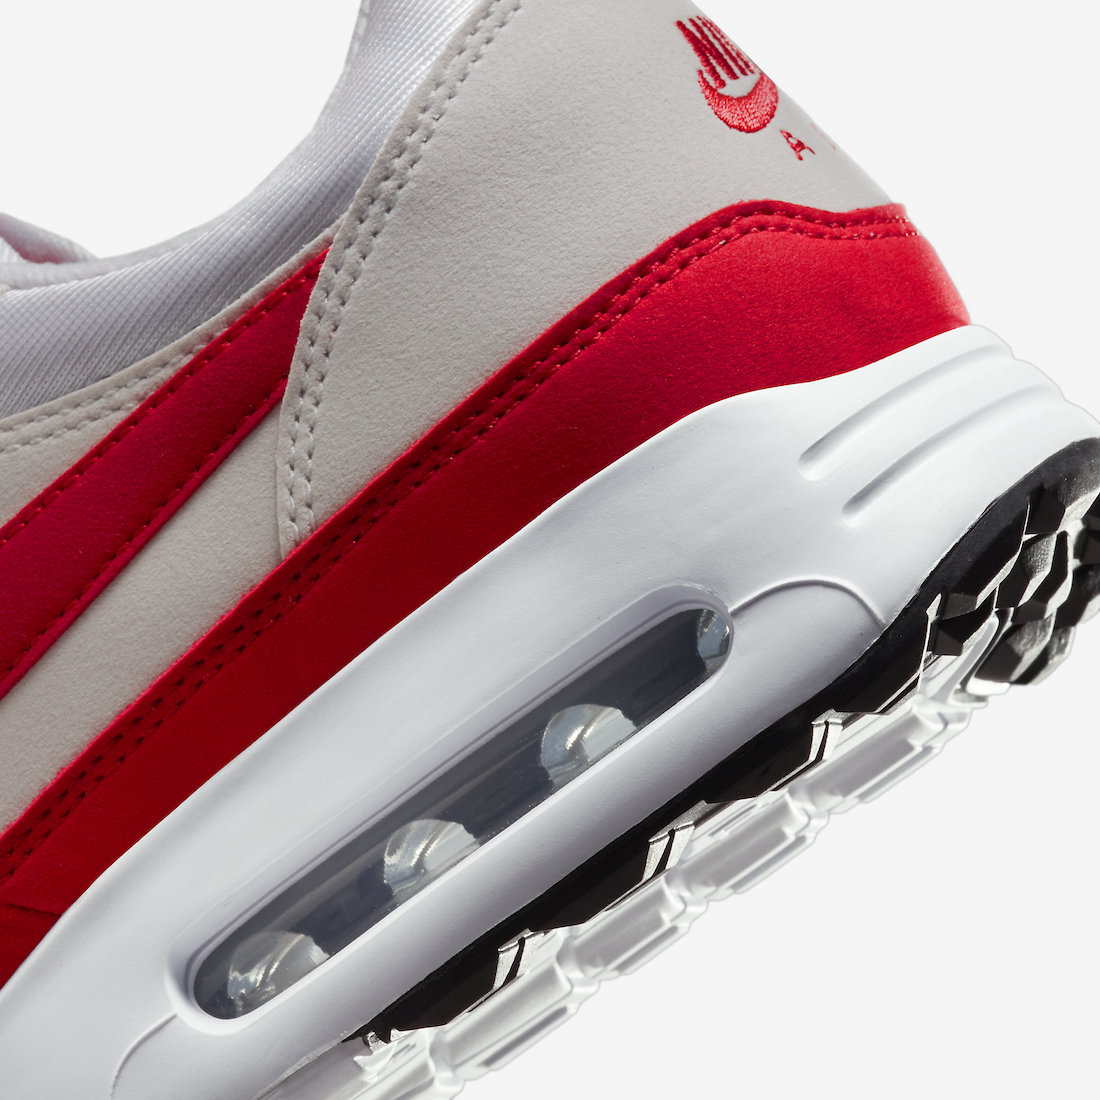 Nike Air Max 1 Golf Sport Red DV1403-160 Release Date